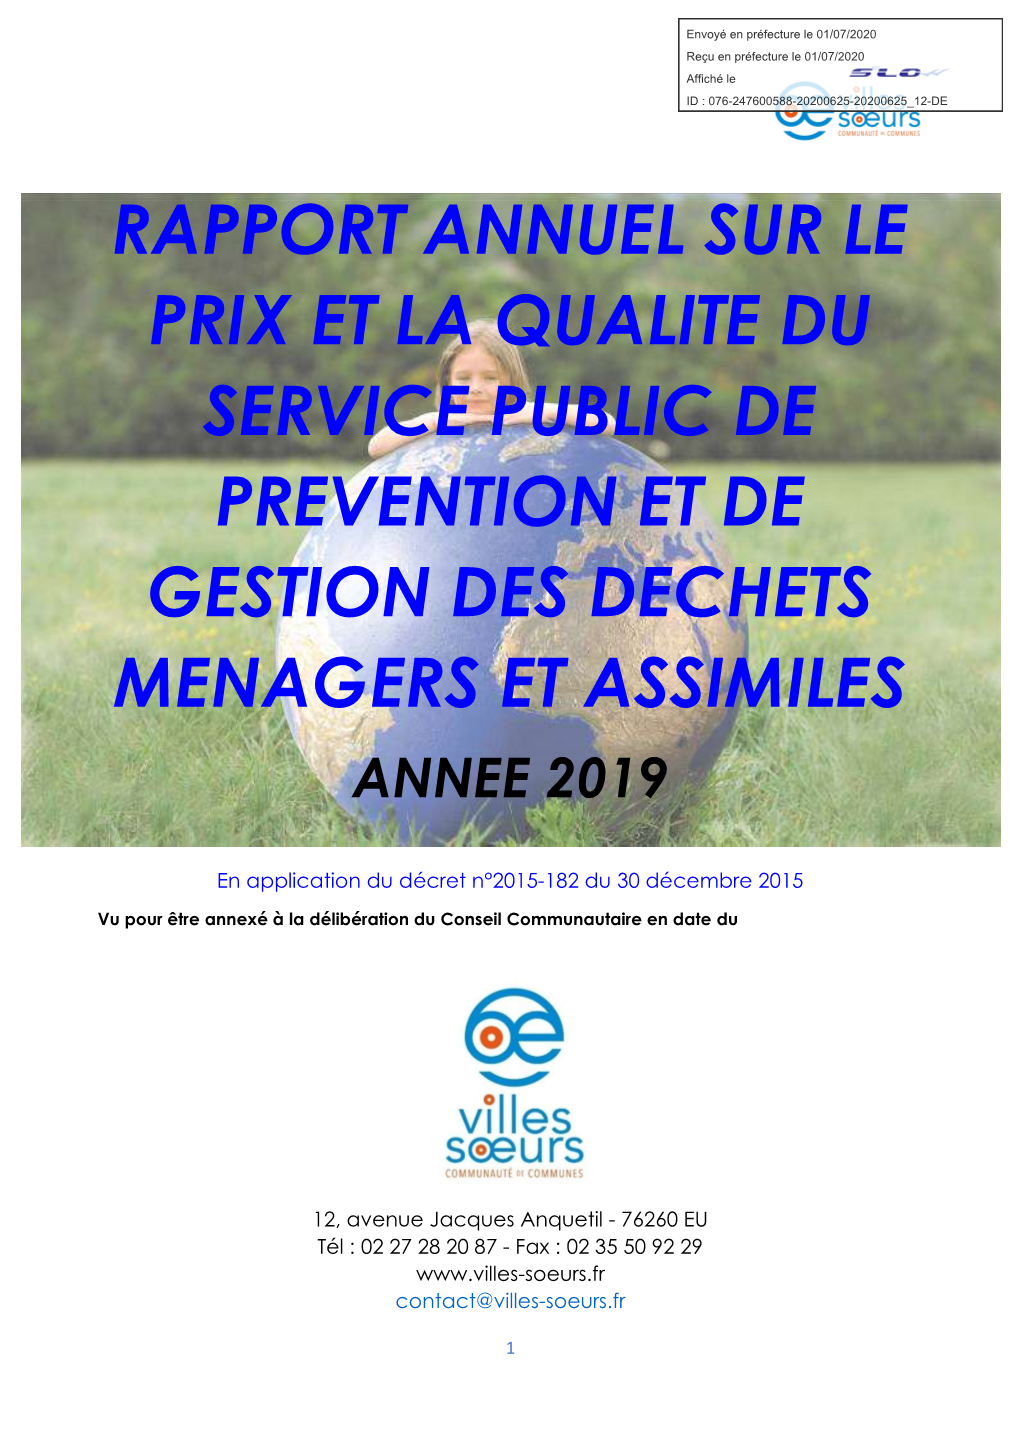 Rapport Annuel Sur Le Prix Et La Qualite Du Service Public De Prevention Et De Gestion Des Dechets Menagers Et Assimiles Annee 2019